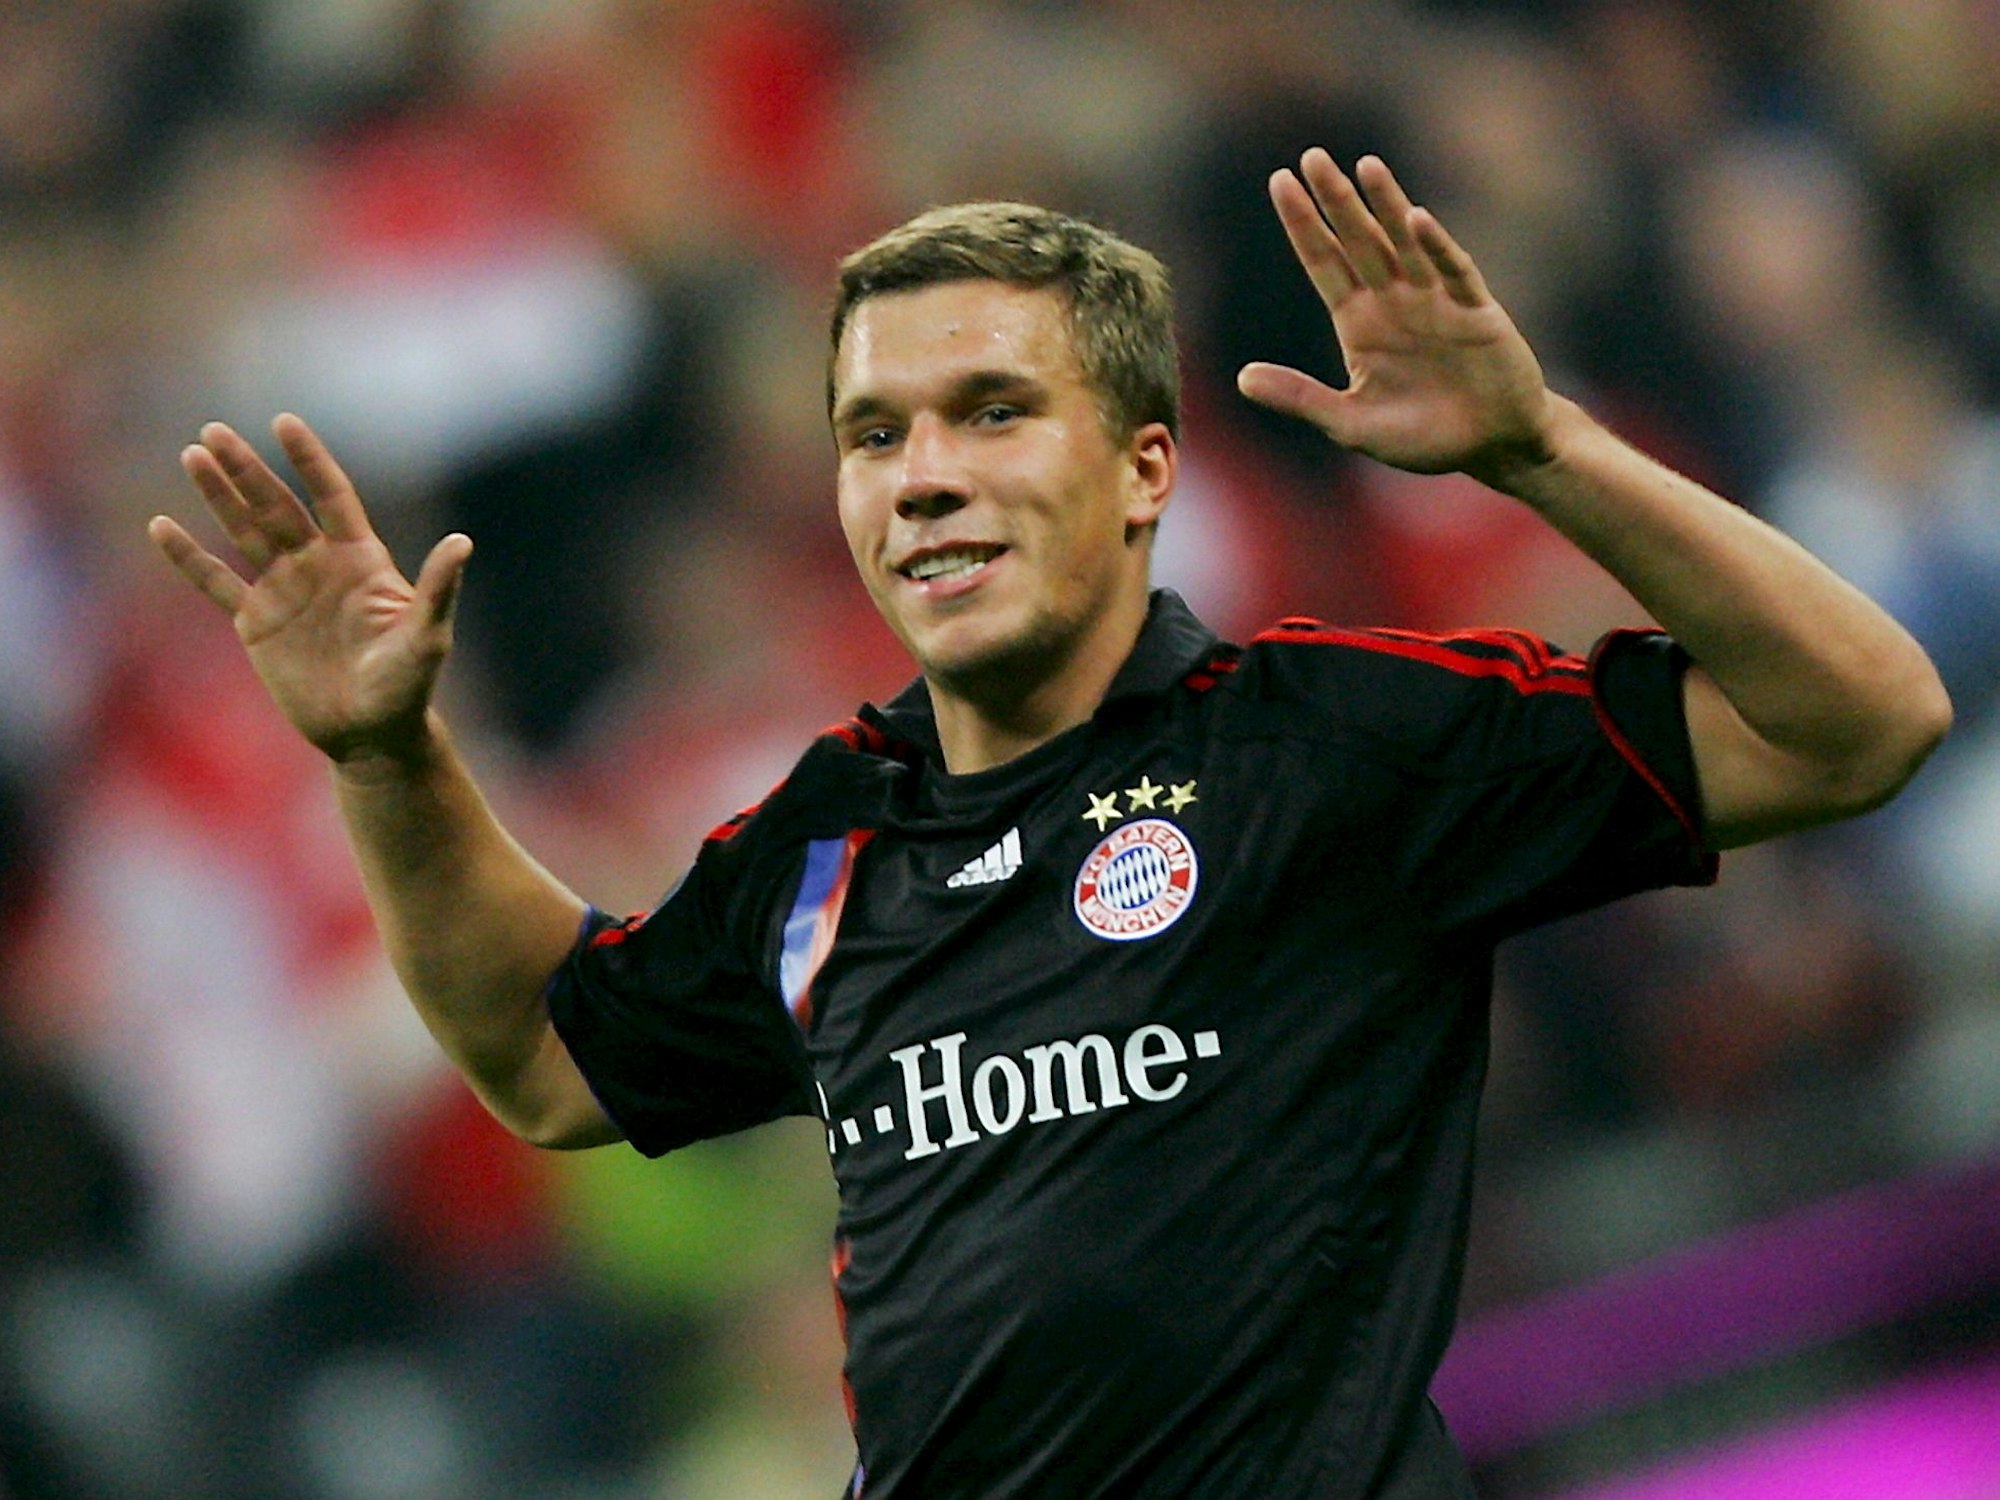 Lukas Podolski trägt ein schwarzes Trikot des FC Bayern München. Er lächelt, seine Hände hebt er in die Höhe.